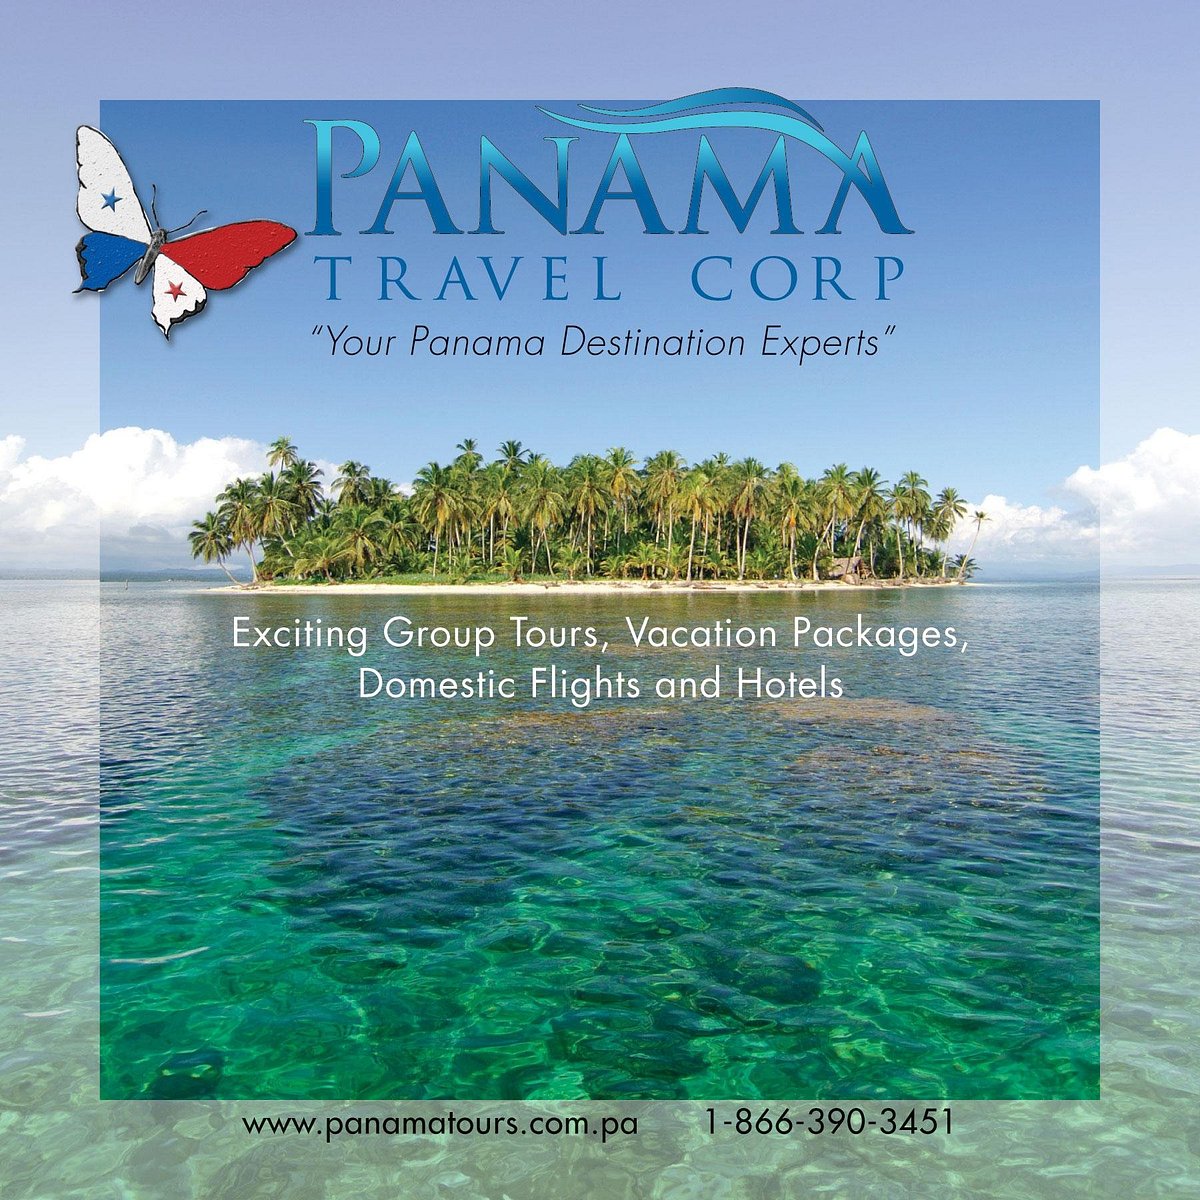 panama city travel agency